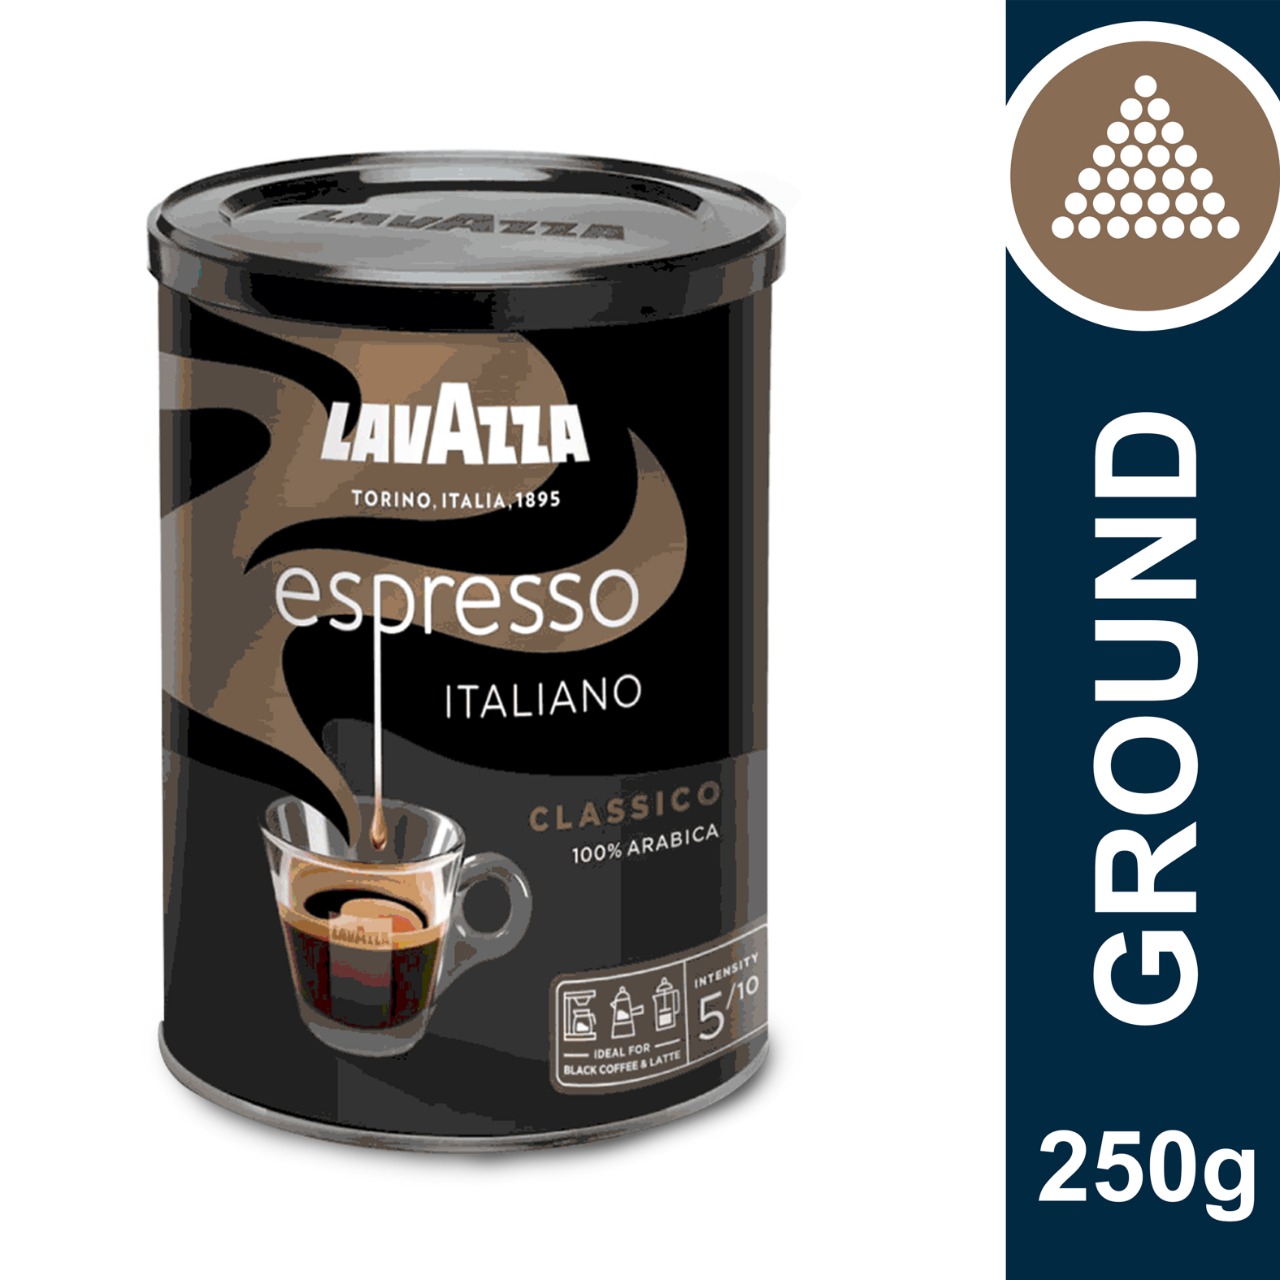 Espresso Italiano Classico - Ground Coffee